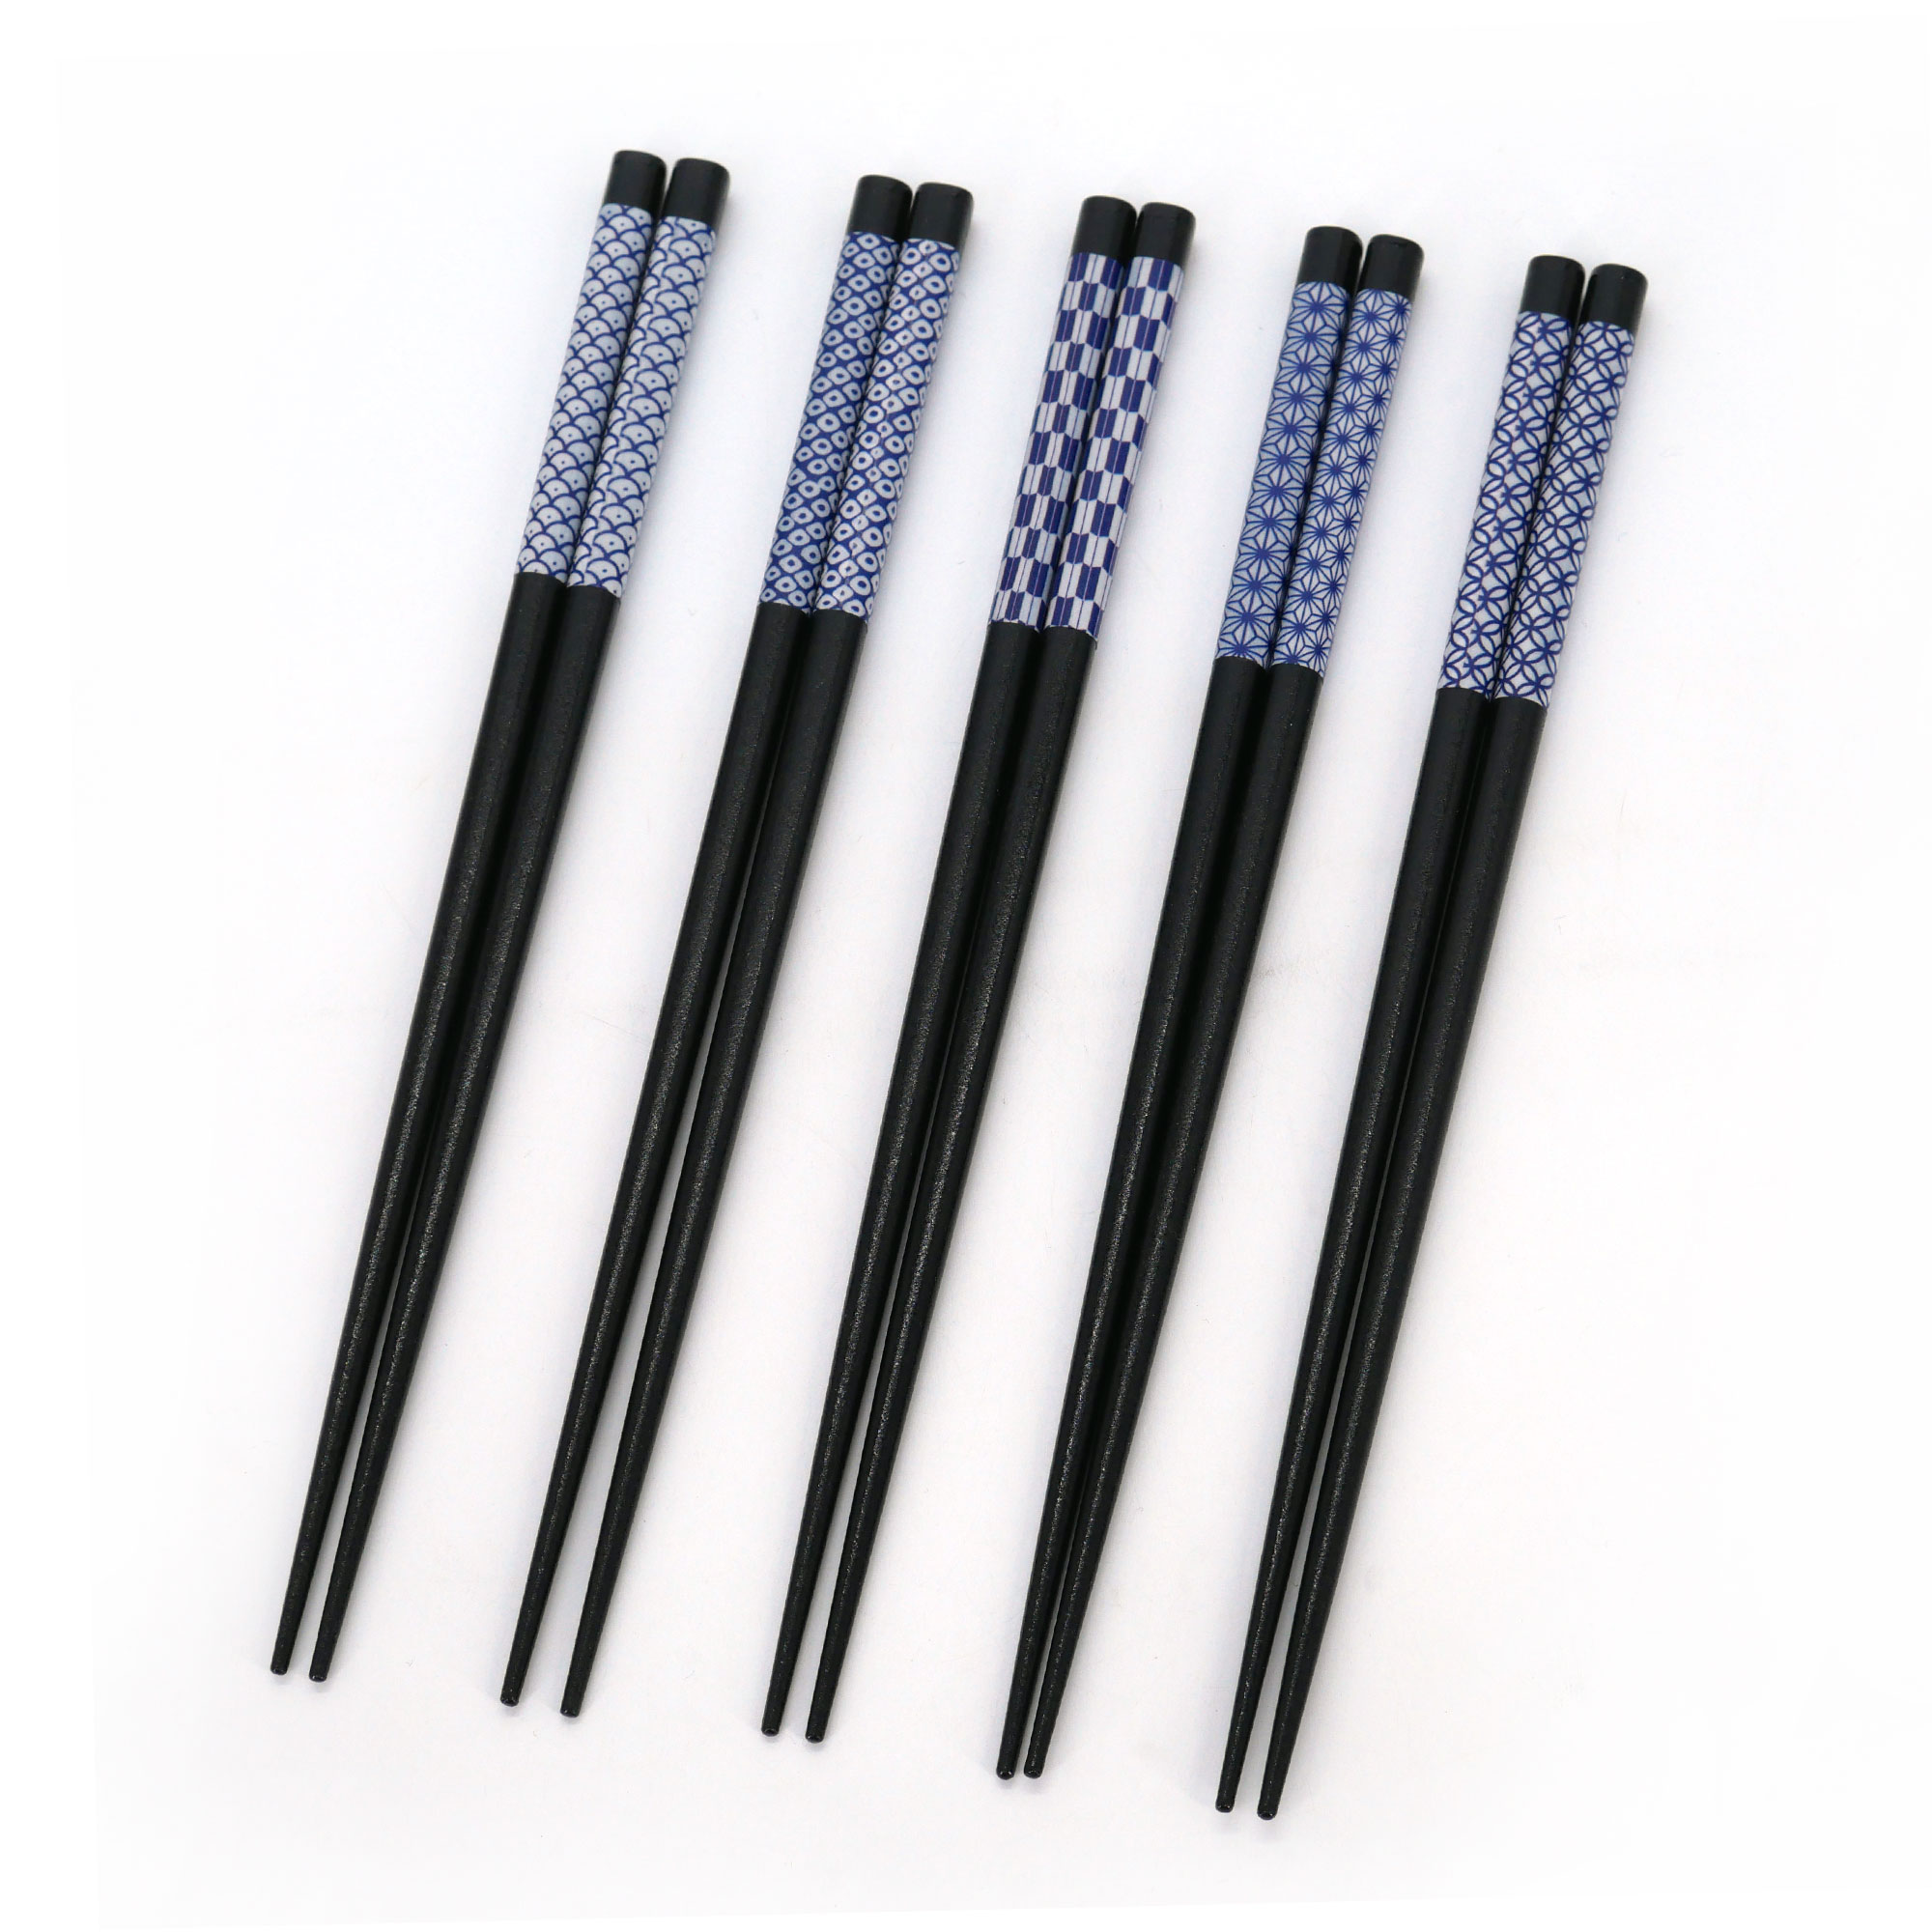 5 baguettes noires japonaises Chopsticks chinoises en métal baguettes antidérapantes pour restaurant Hopewey Lot de 5 paires de baguettes noires 